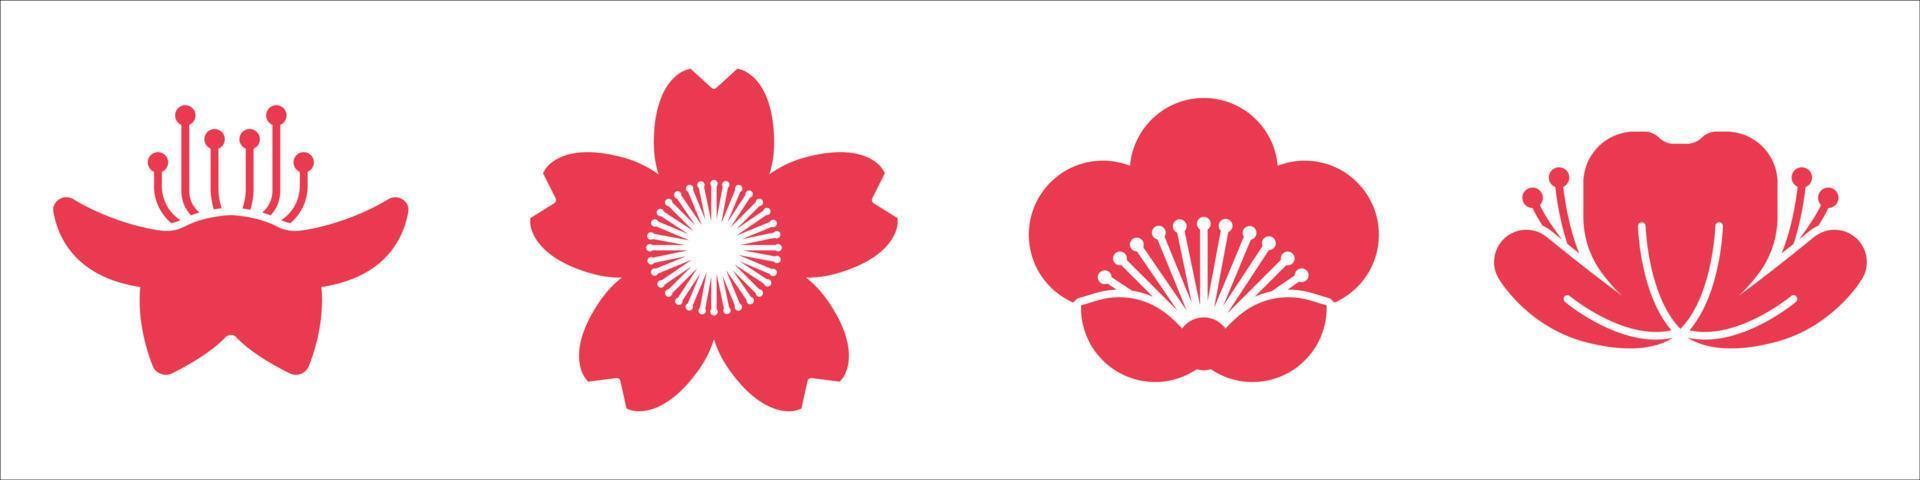 iconos de flor de cerezo vector